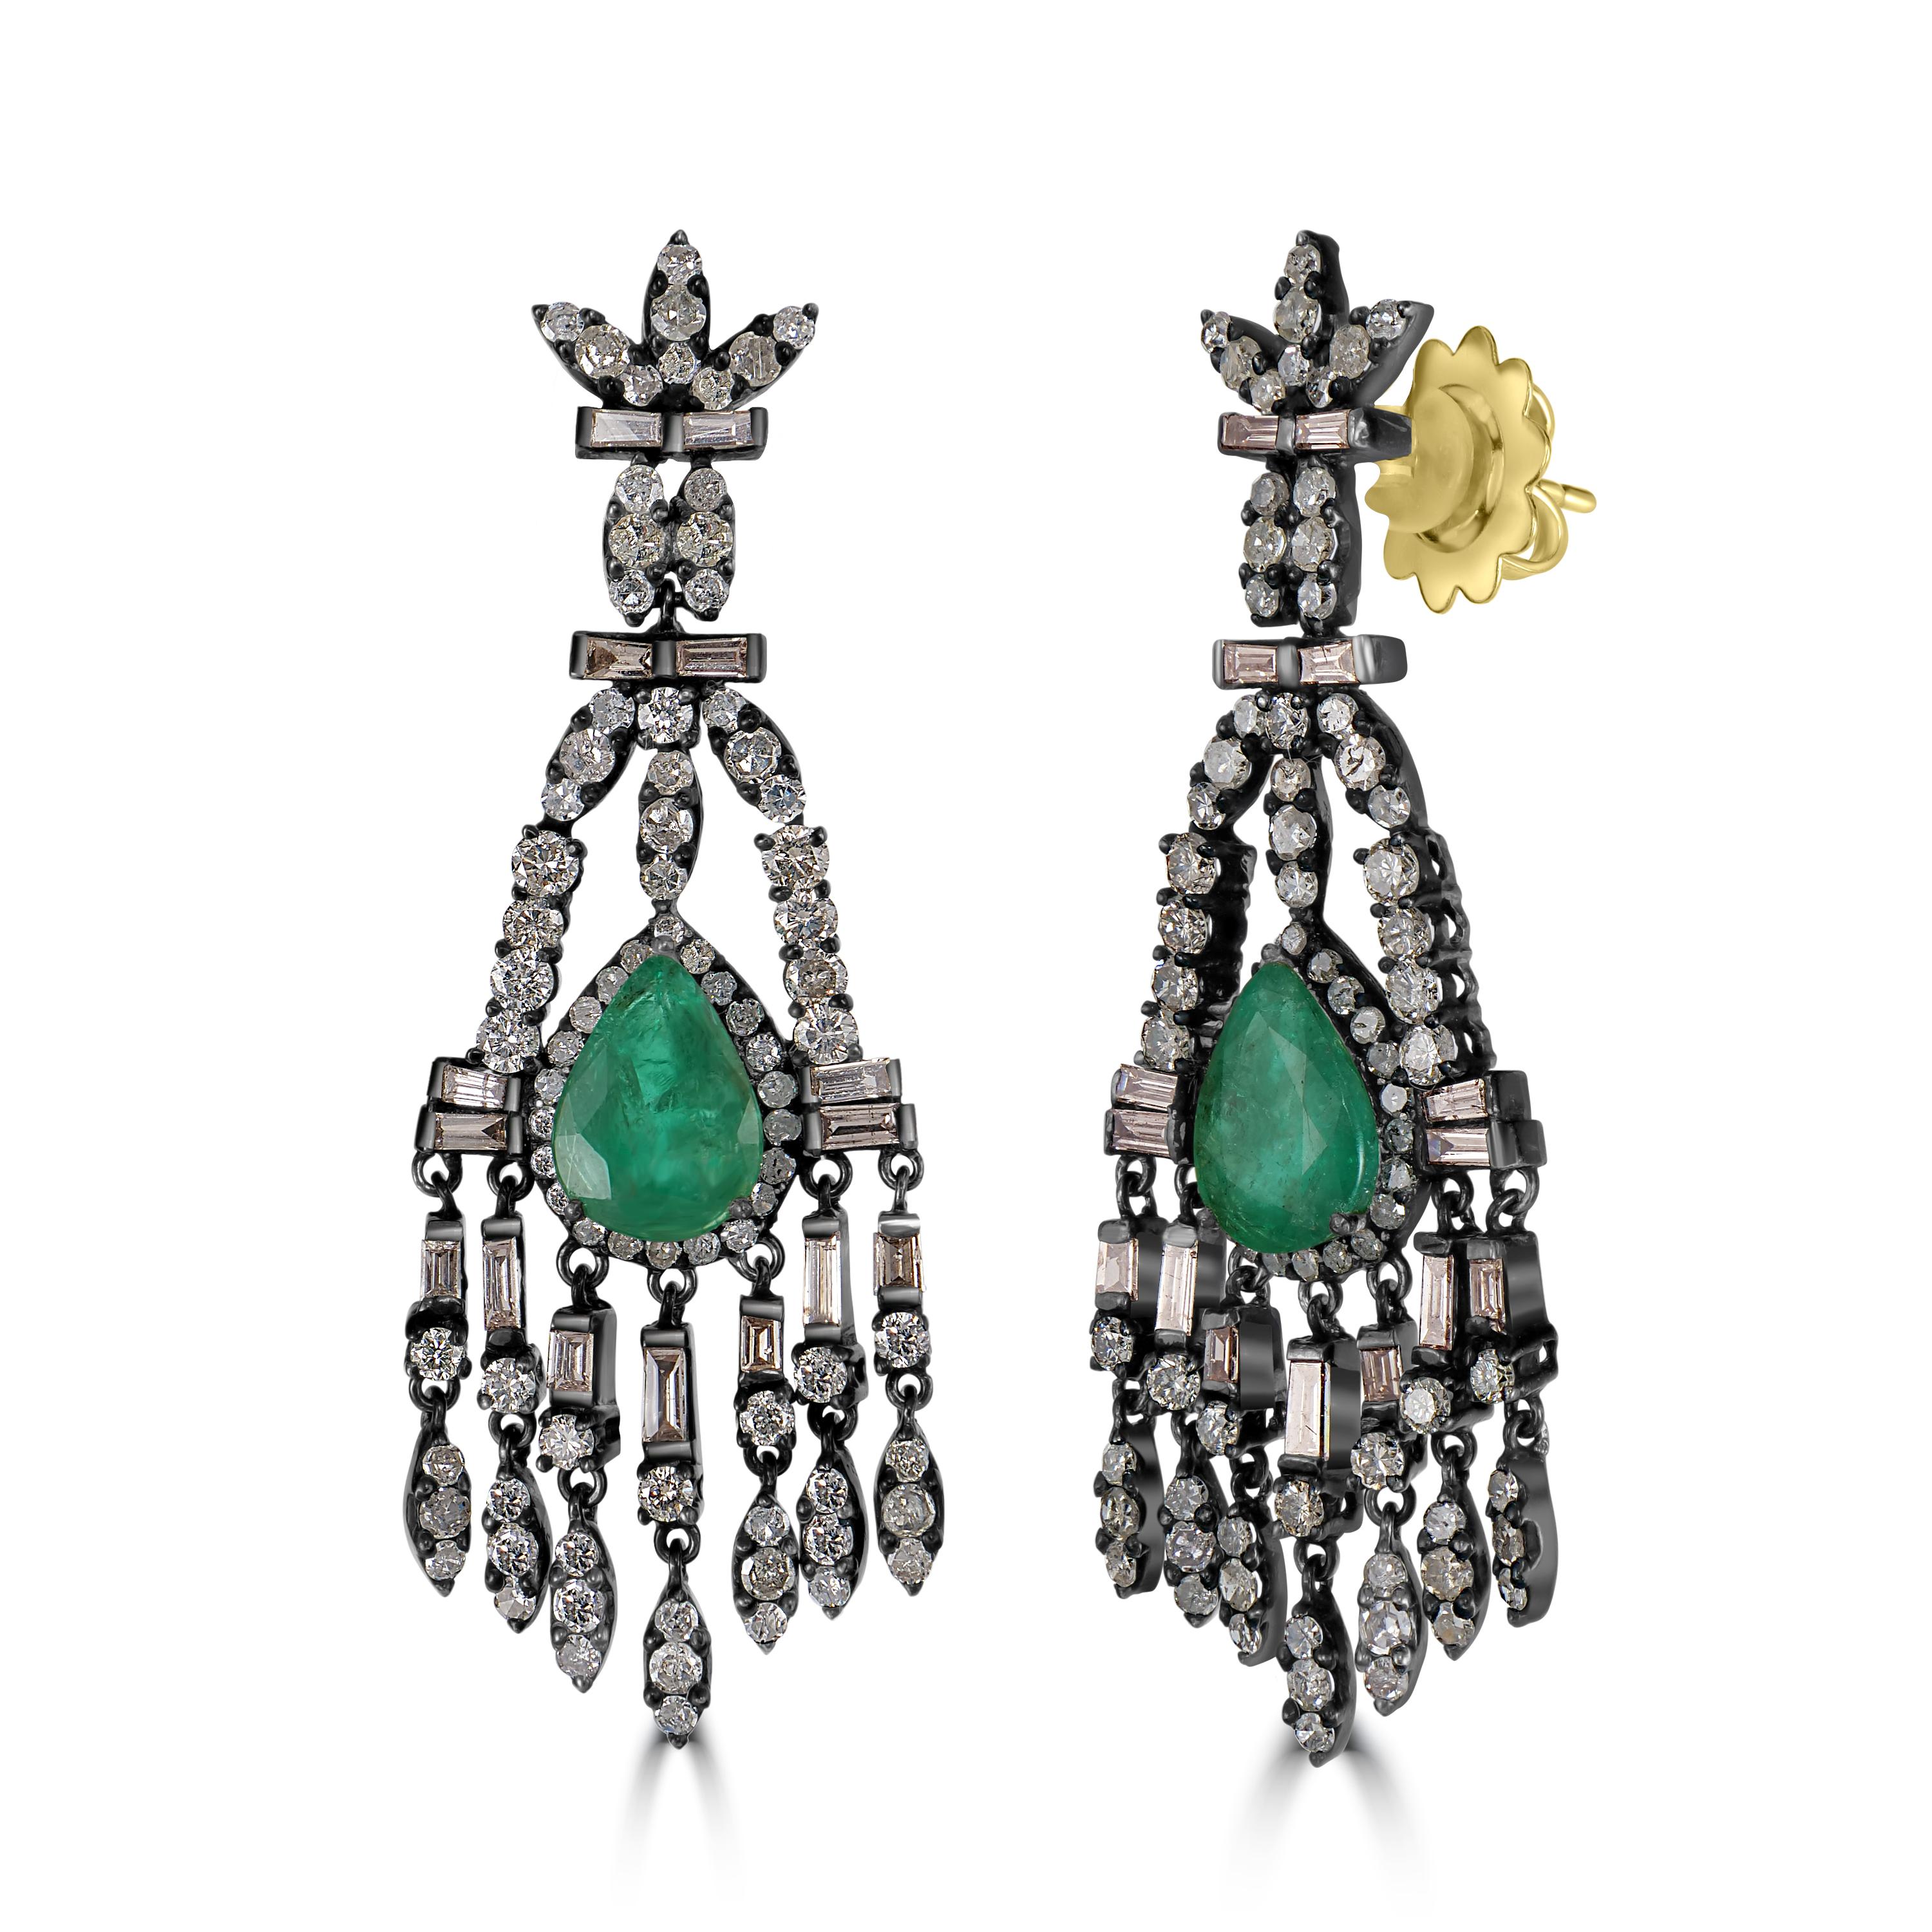 Lassen Sie sich von der exquisiten Schönheit unserer Victorian Emerald and Diamond Floral Chandelier Earrings verzaubern - ein atemberaubendes Zeugnis zeitloser Eleganz und Raffinesse.

Diese bezaubernden Kronleuchter-Ohrringe bestehen aus einer